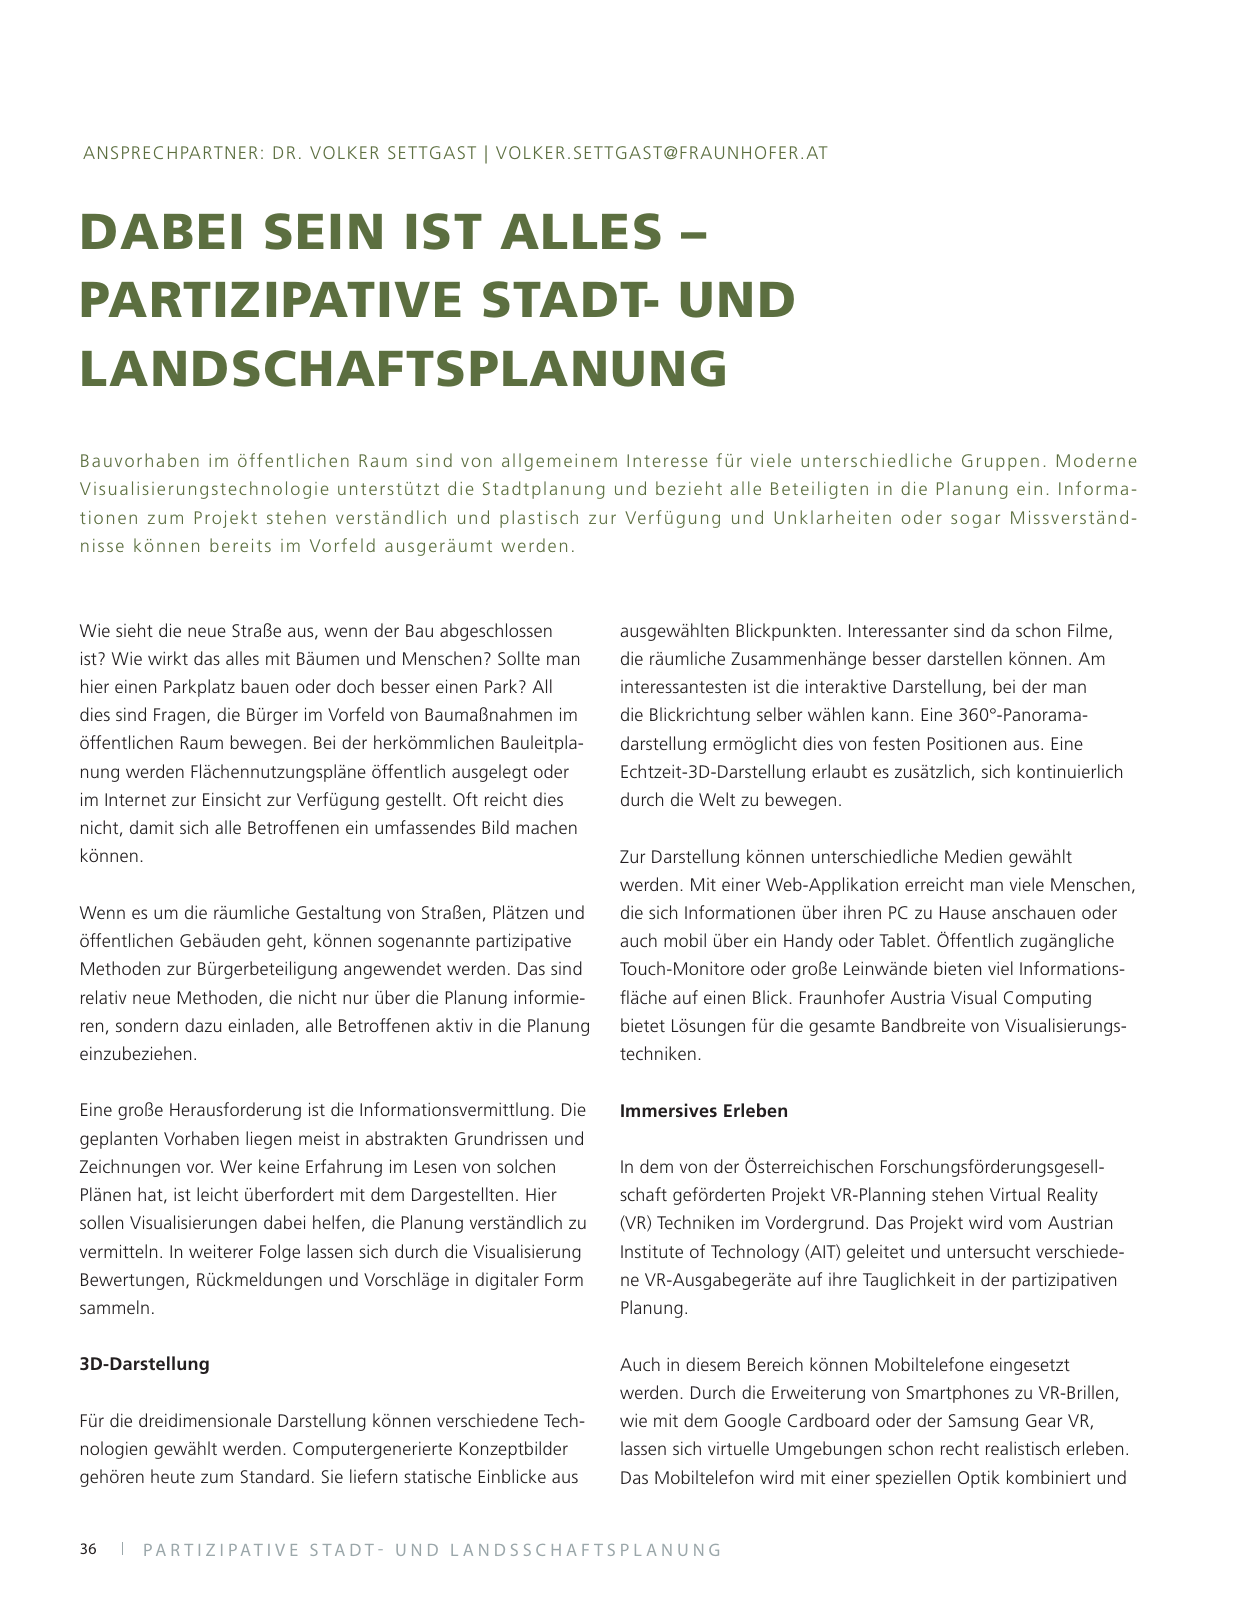 Vorschau Fraunhofer Austria Jahresbericht 2016/17 Seite 38